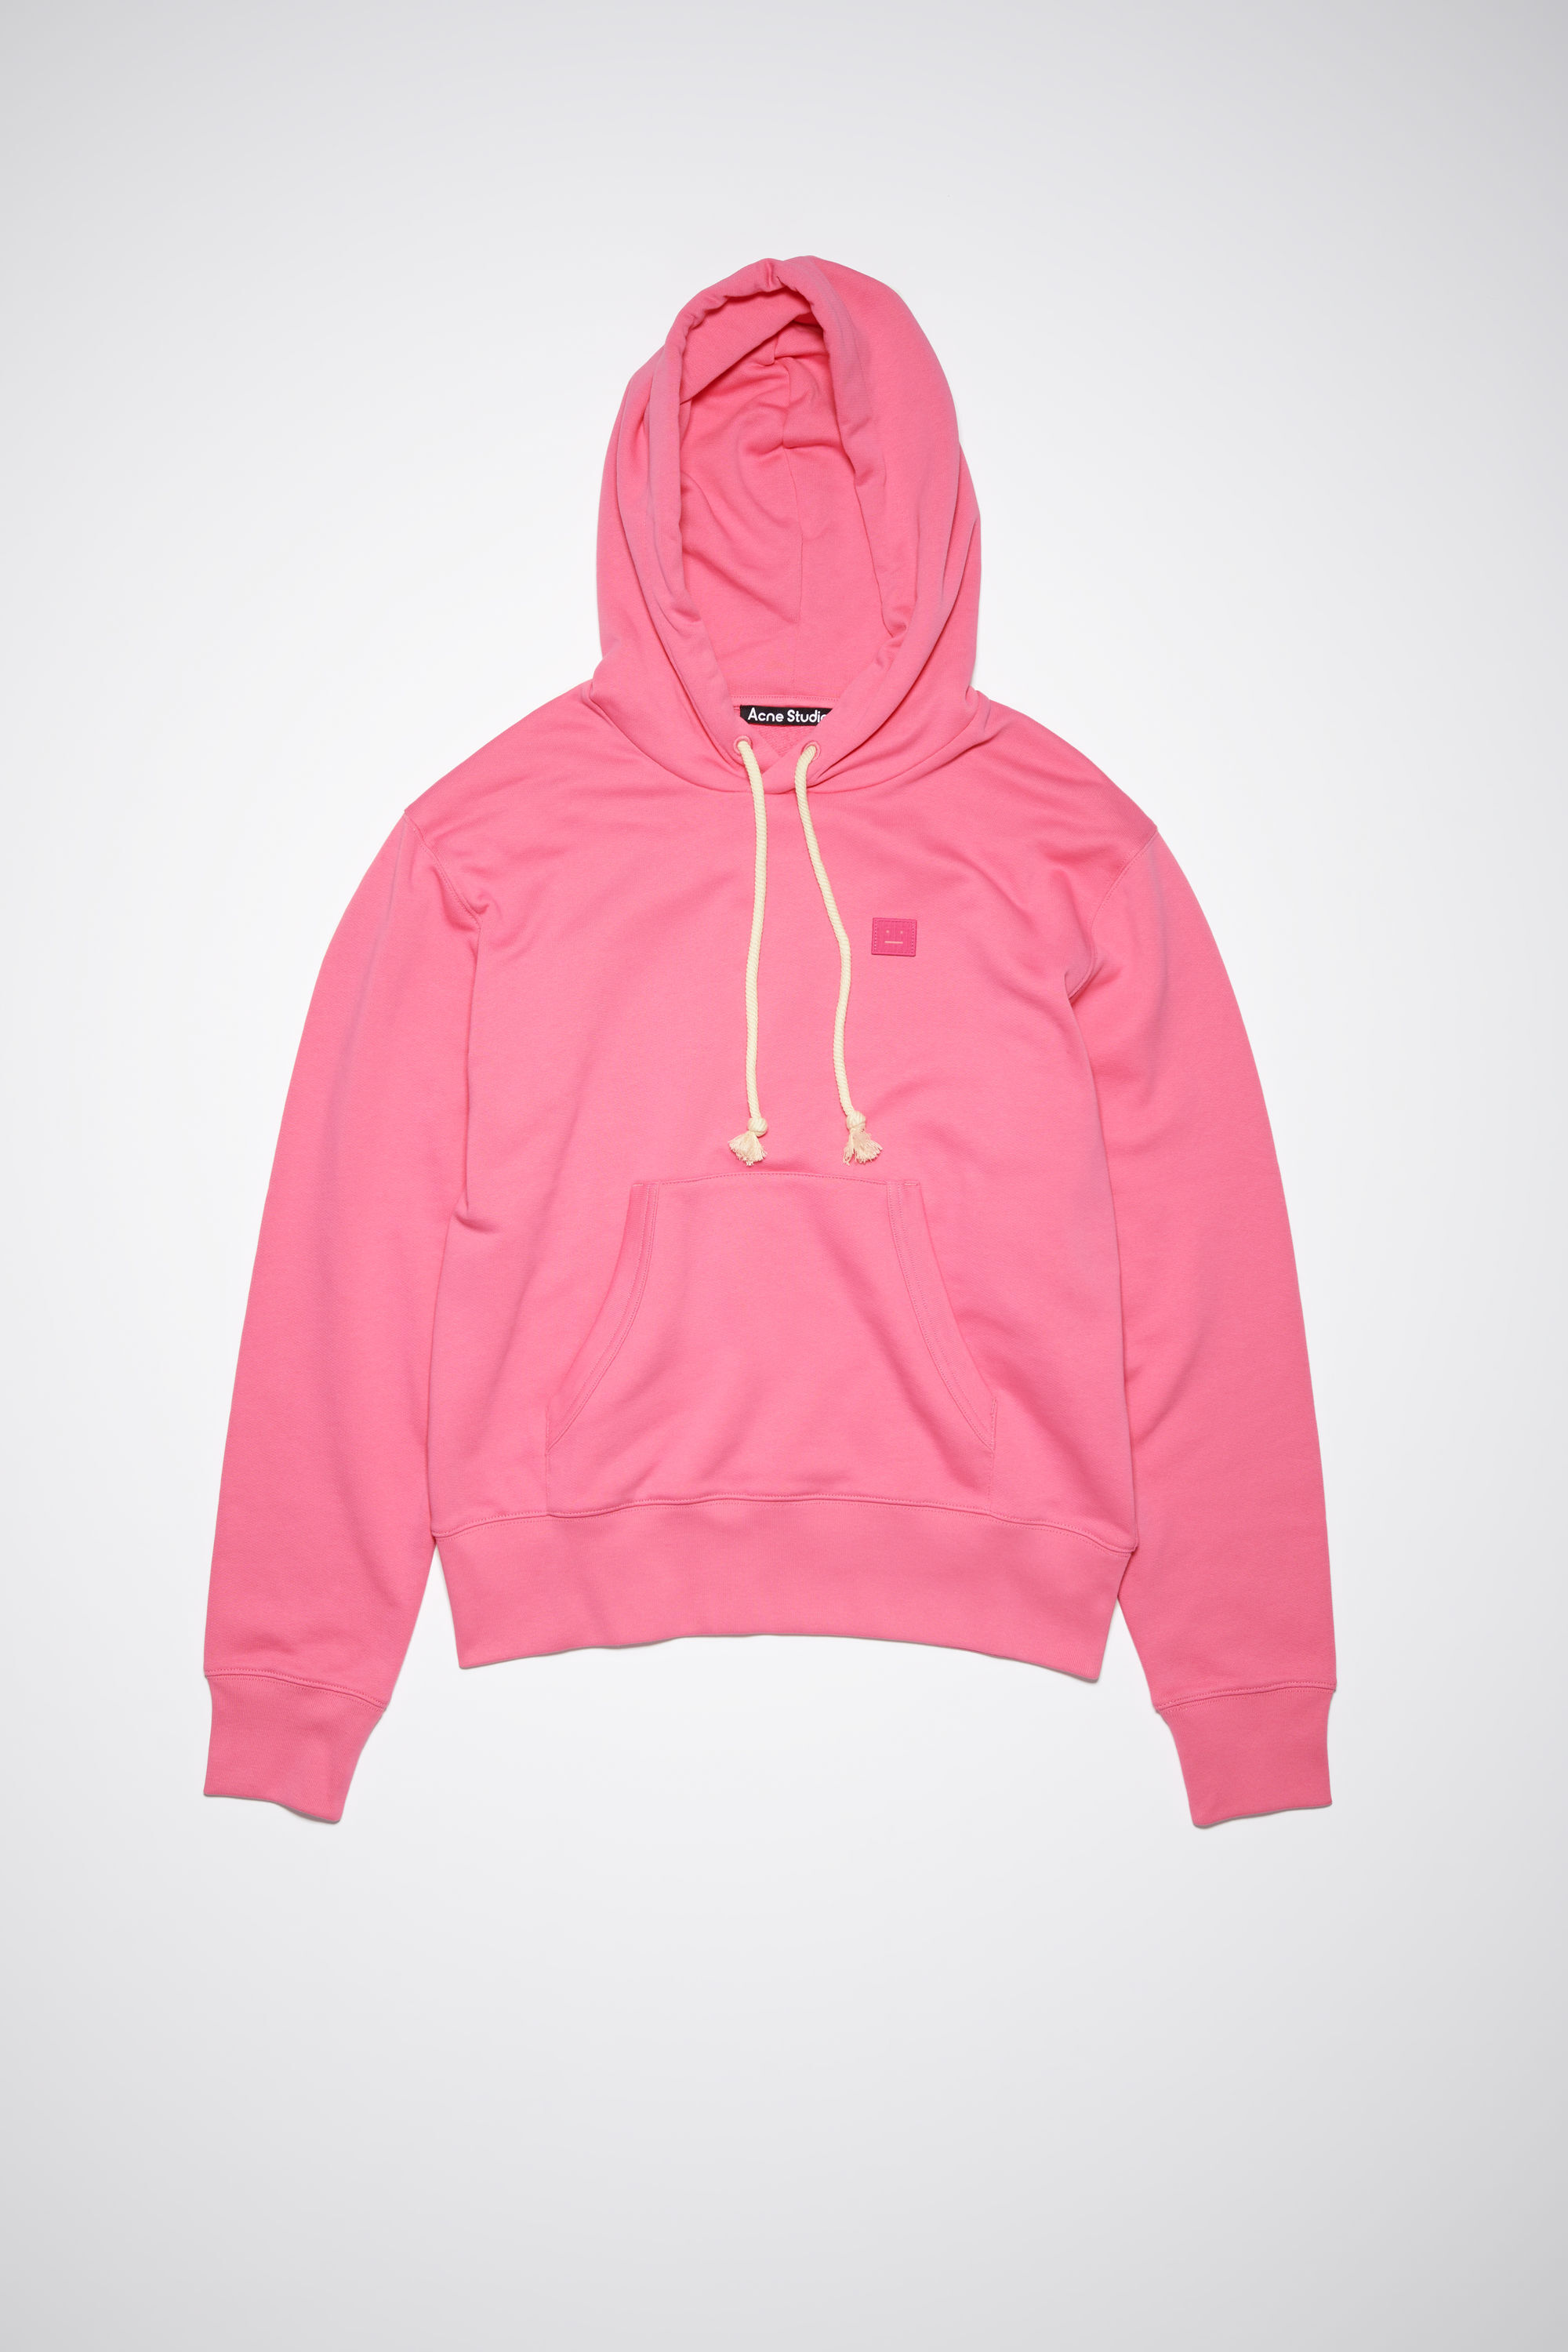 Acne Studios - Hooded sweatshirt - Regular fit - Bright pink